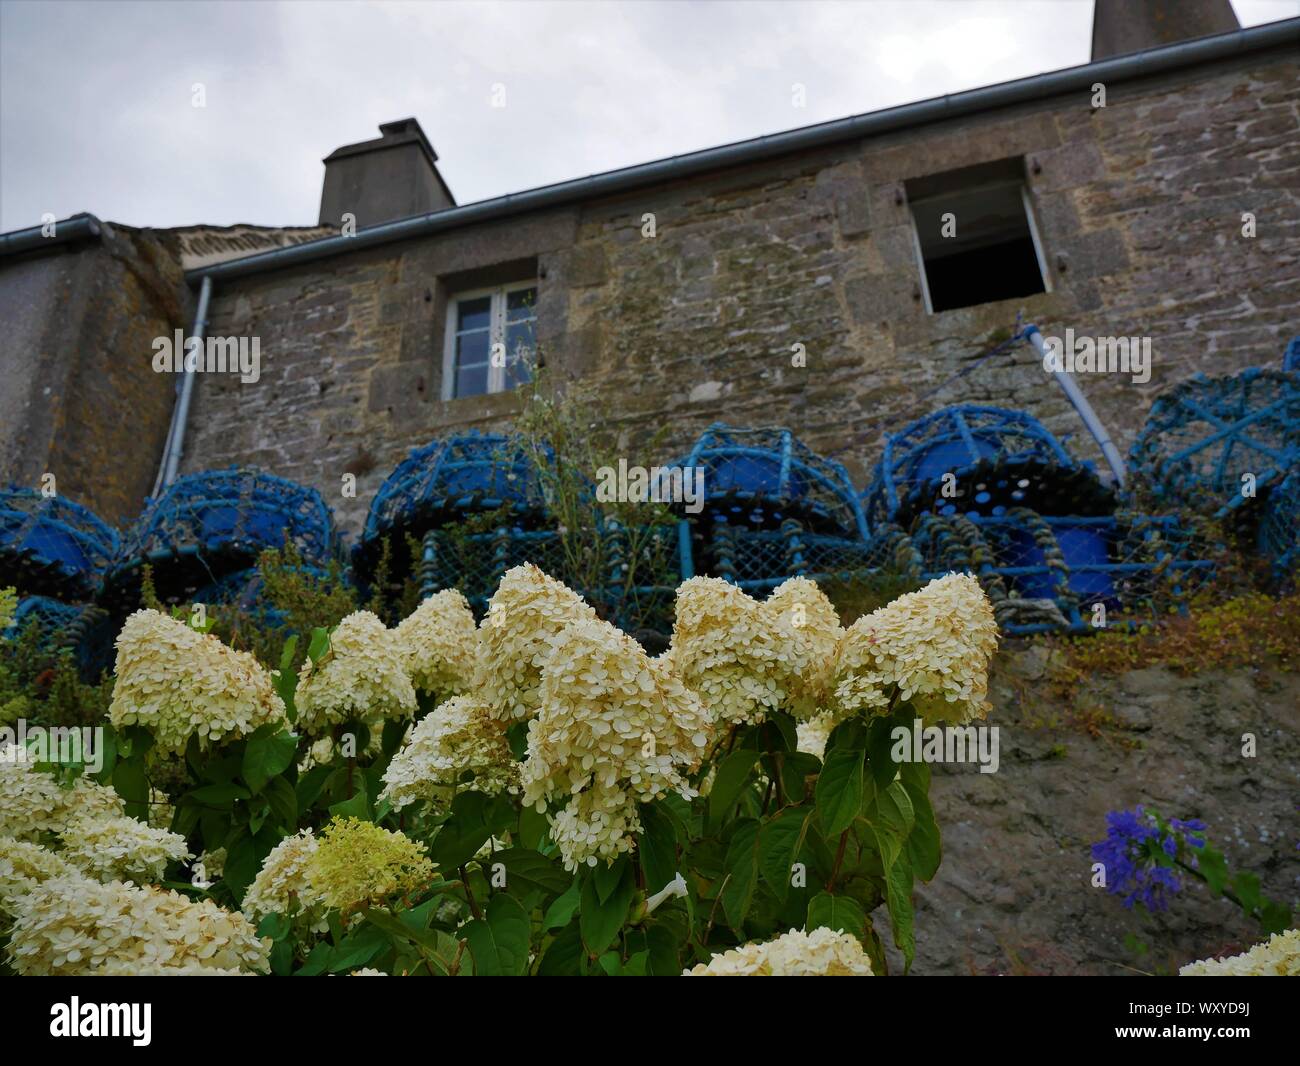 Maison bretonne fleurie d'le ortensie avec des accessoires de Peche au crustacés , toit en ardoise , casier de Peche , le conquet , Bretagne Foto Stock